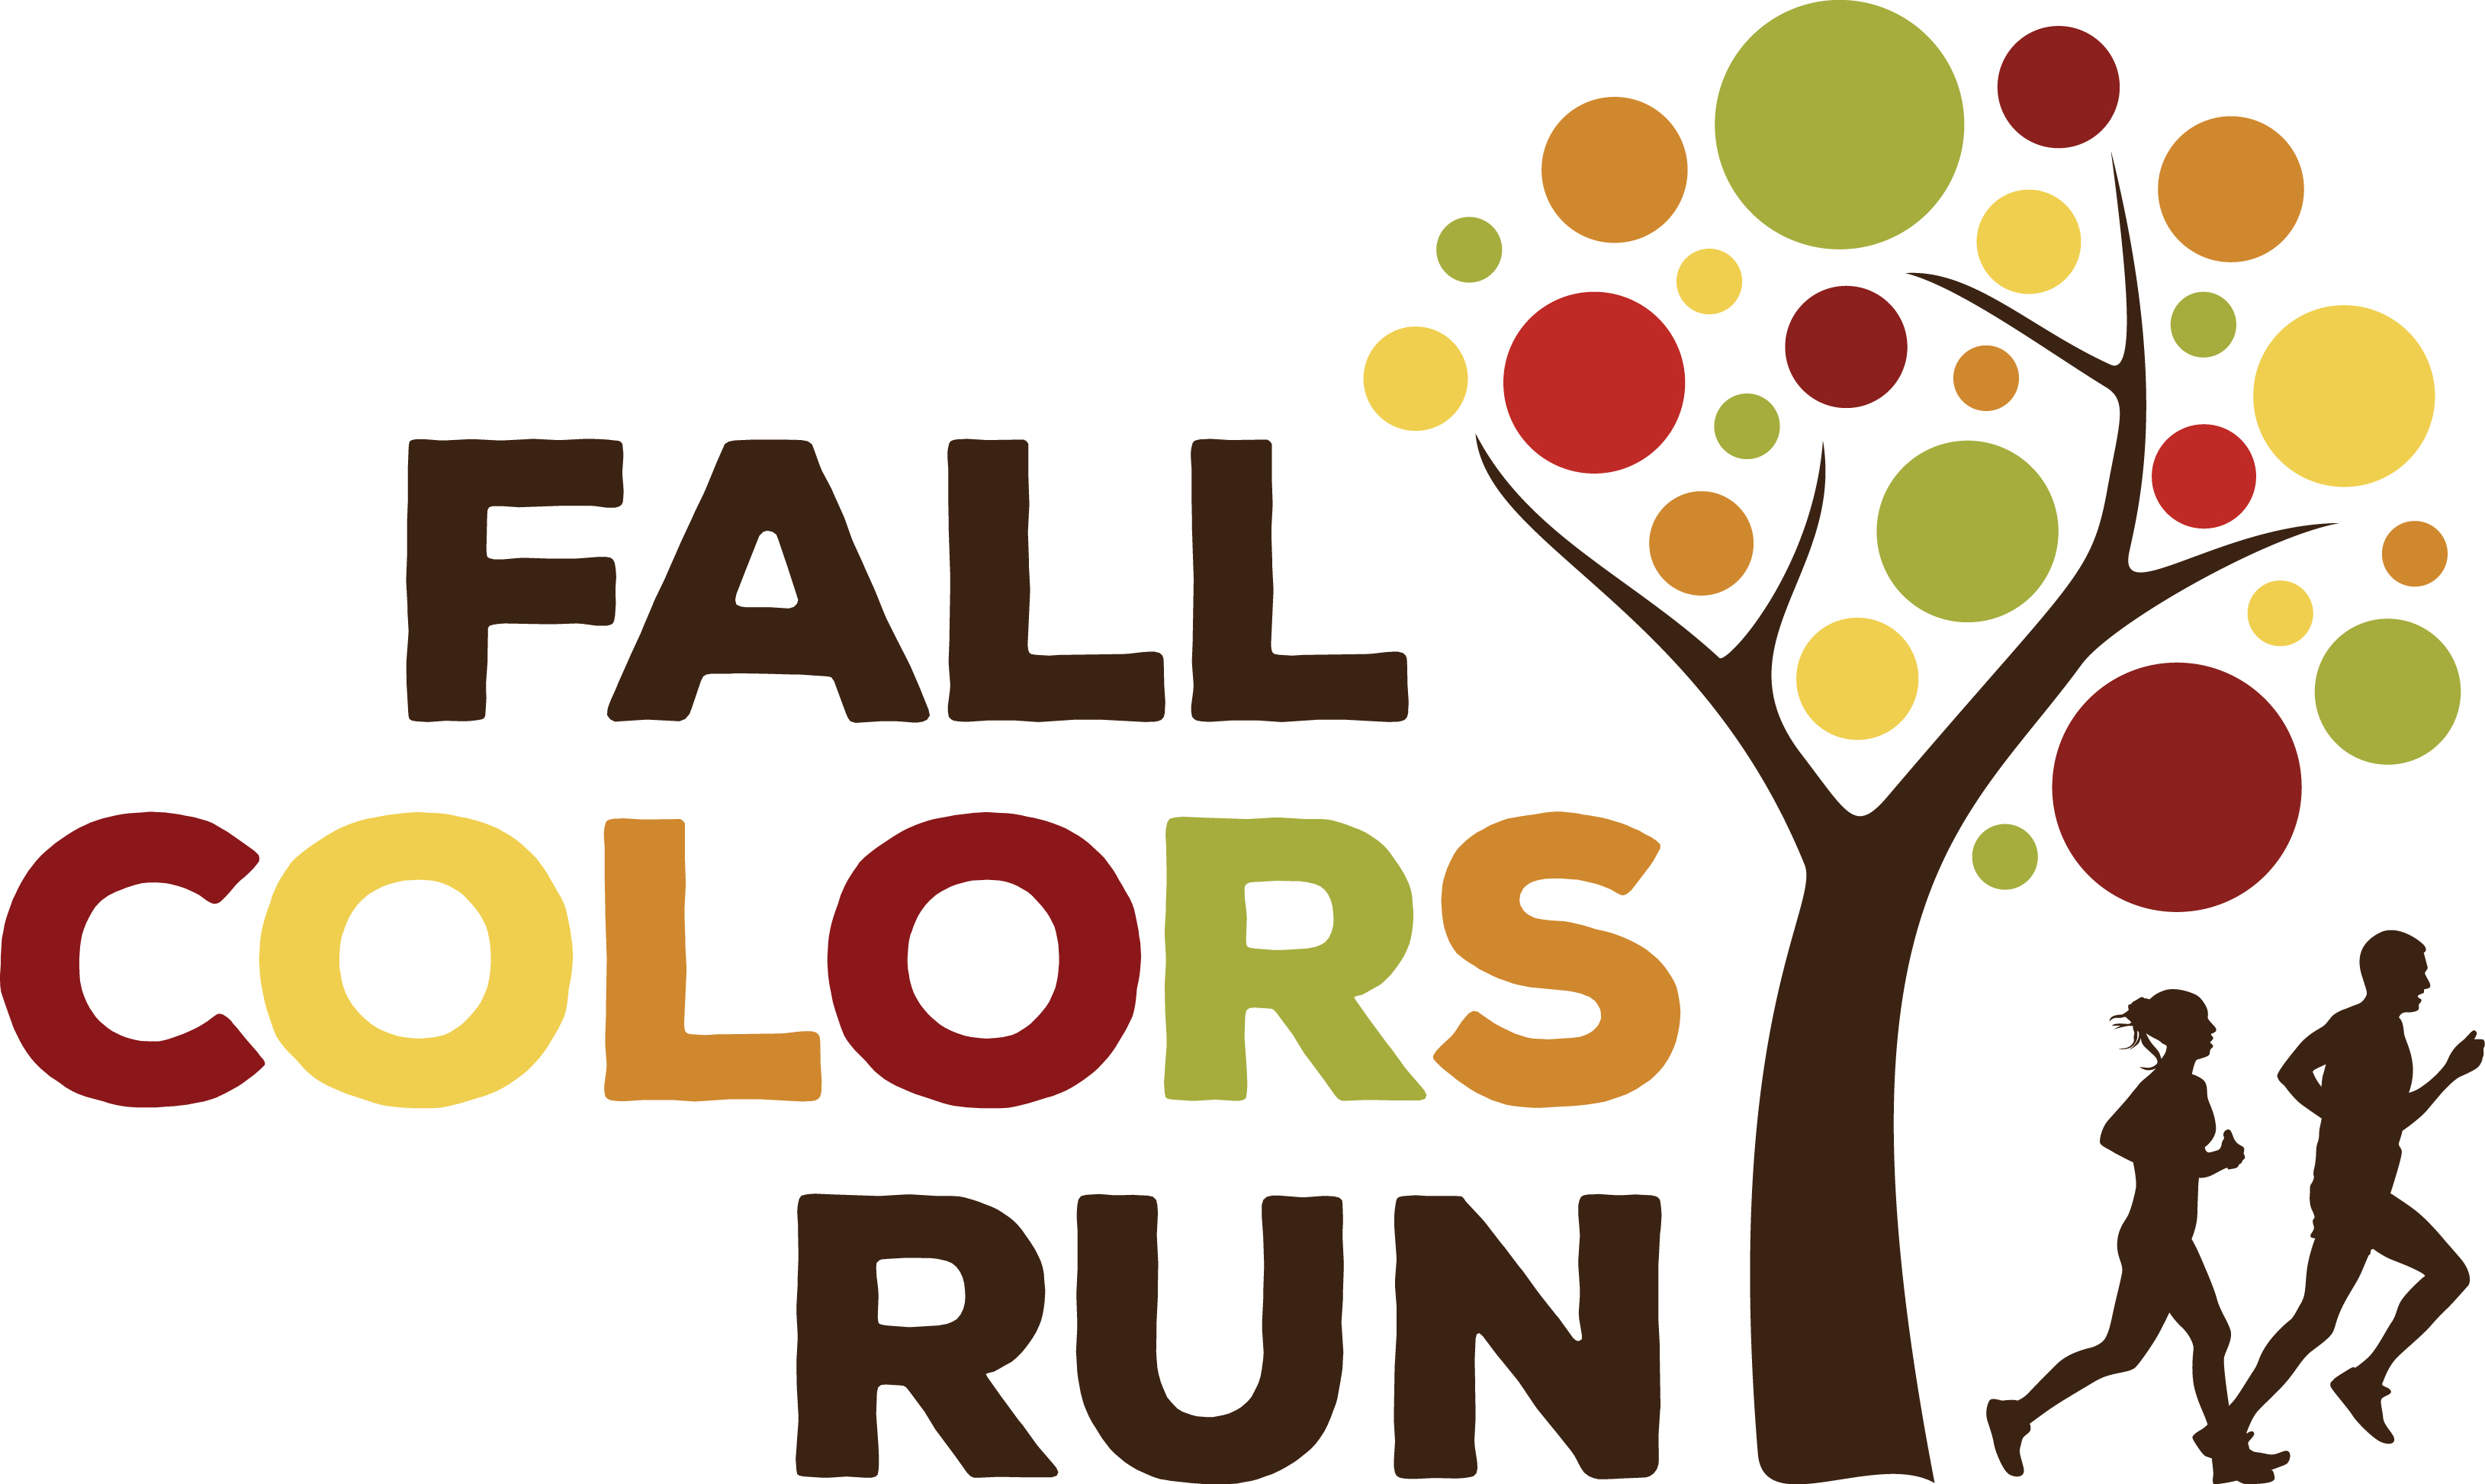 Fall Colors Run